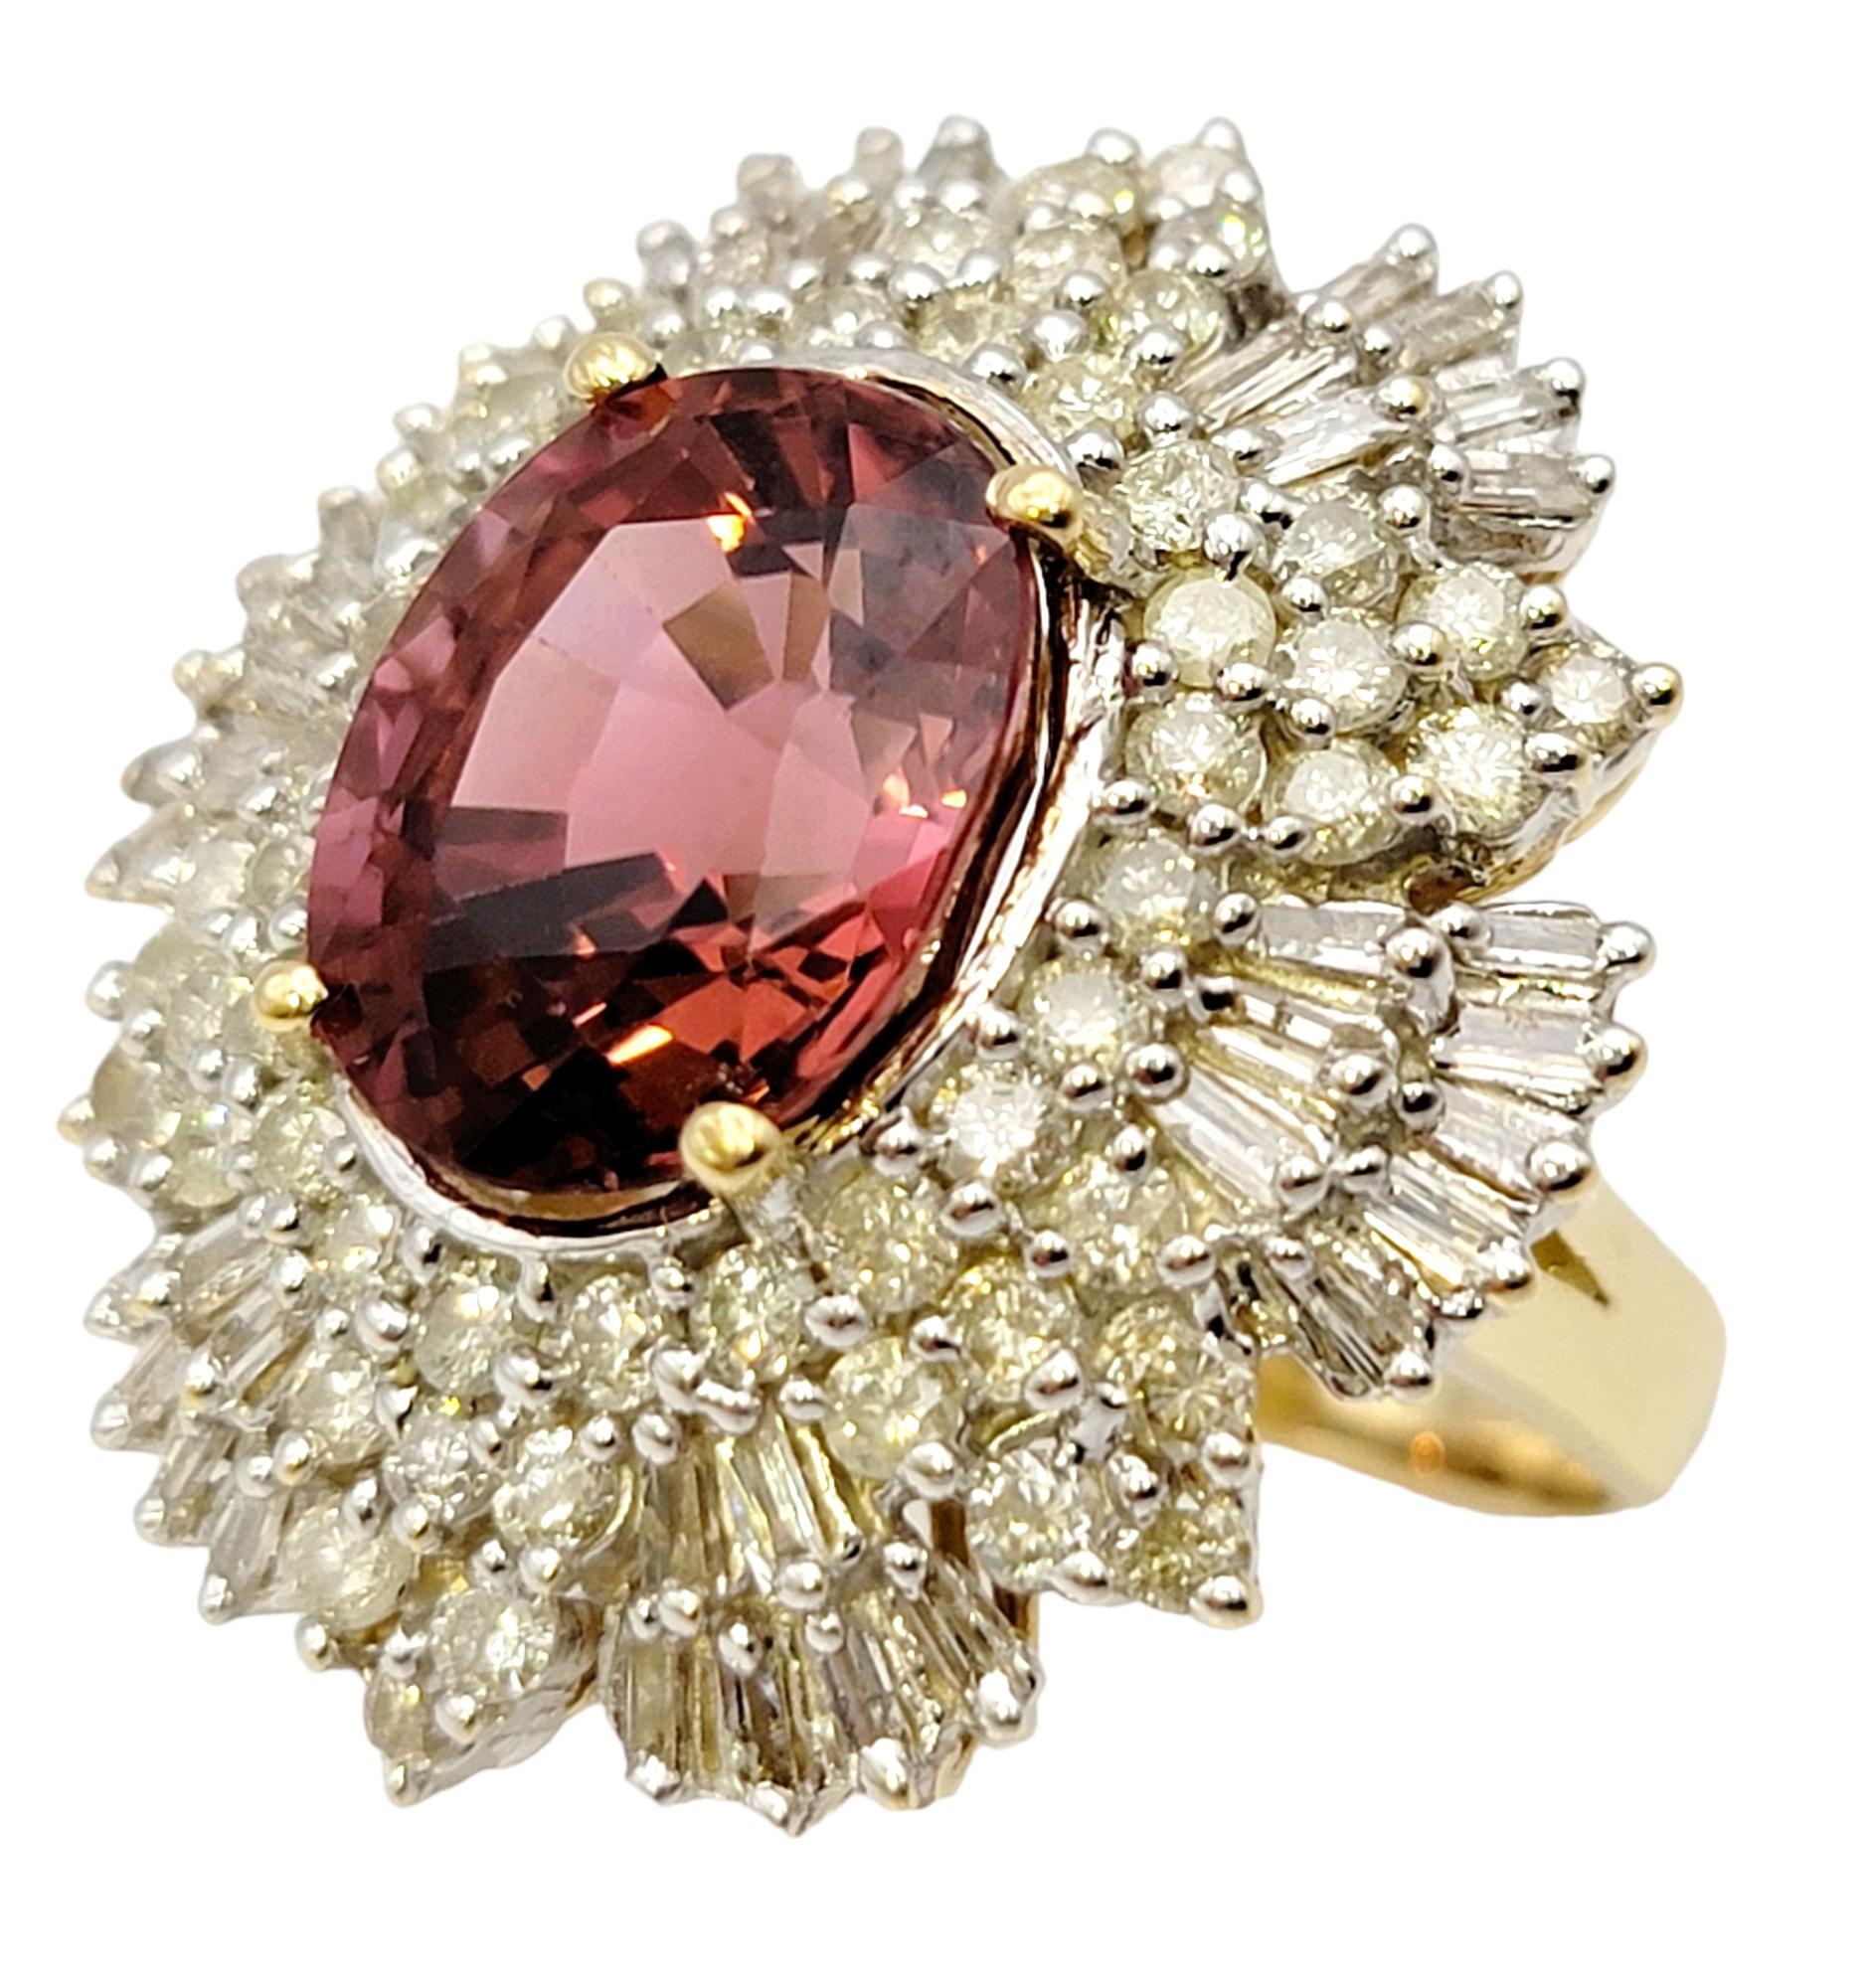 Ringgröße: 8.25

Dieser atemberaubend funkelnde Ring mit Diamanten und rosafarbenen Turmalinen ist ein sensationelles Statement. Die schillernden Diamanten füllen den Finger aus und lassen ihn aus jedem Blickwinkel schimmern, während der rosafarbene